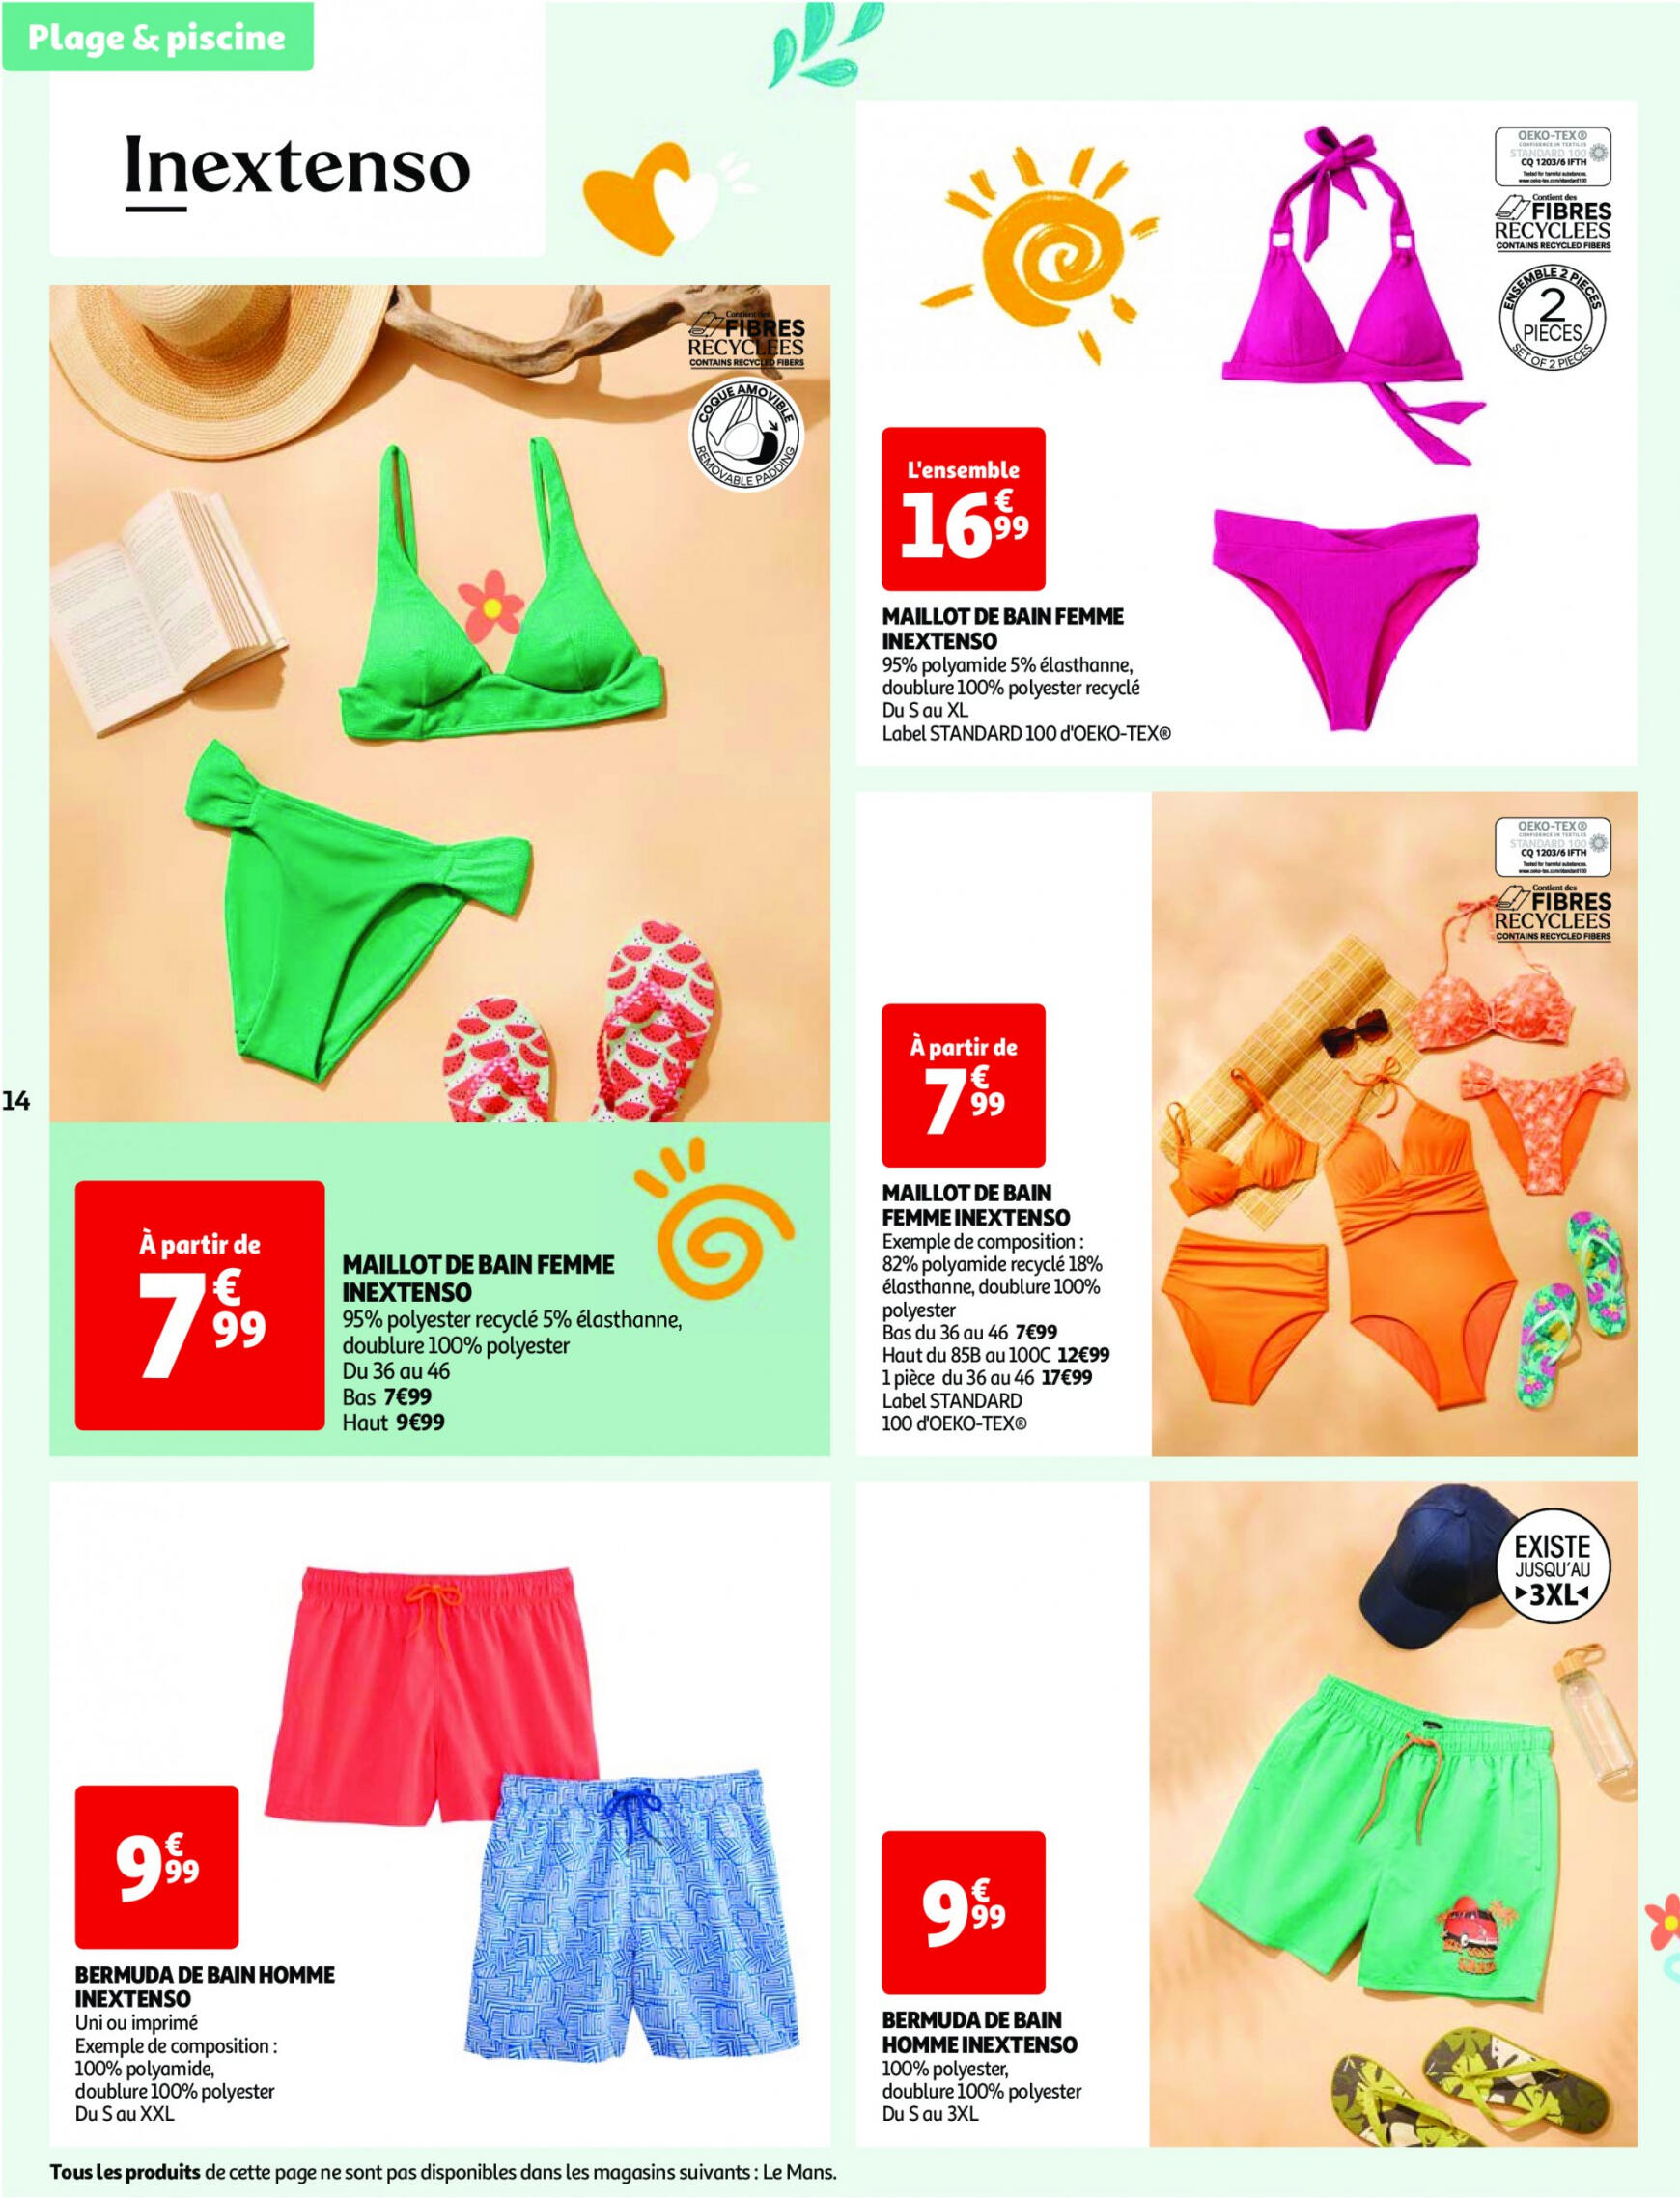 auchan - Auchan - Nos exclusivités Summer pour s'amuser tout l'été folder huidig 14.05. - 15.06. - page: 14